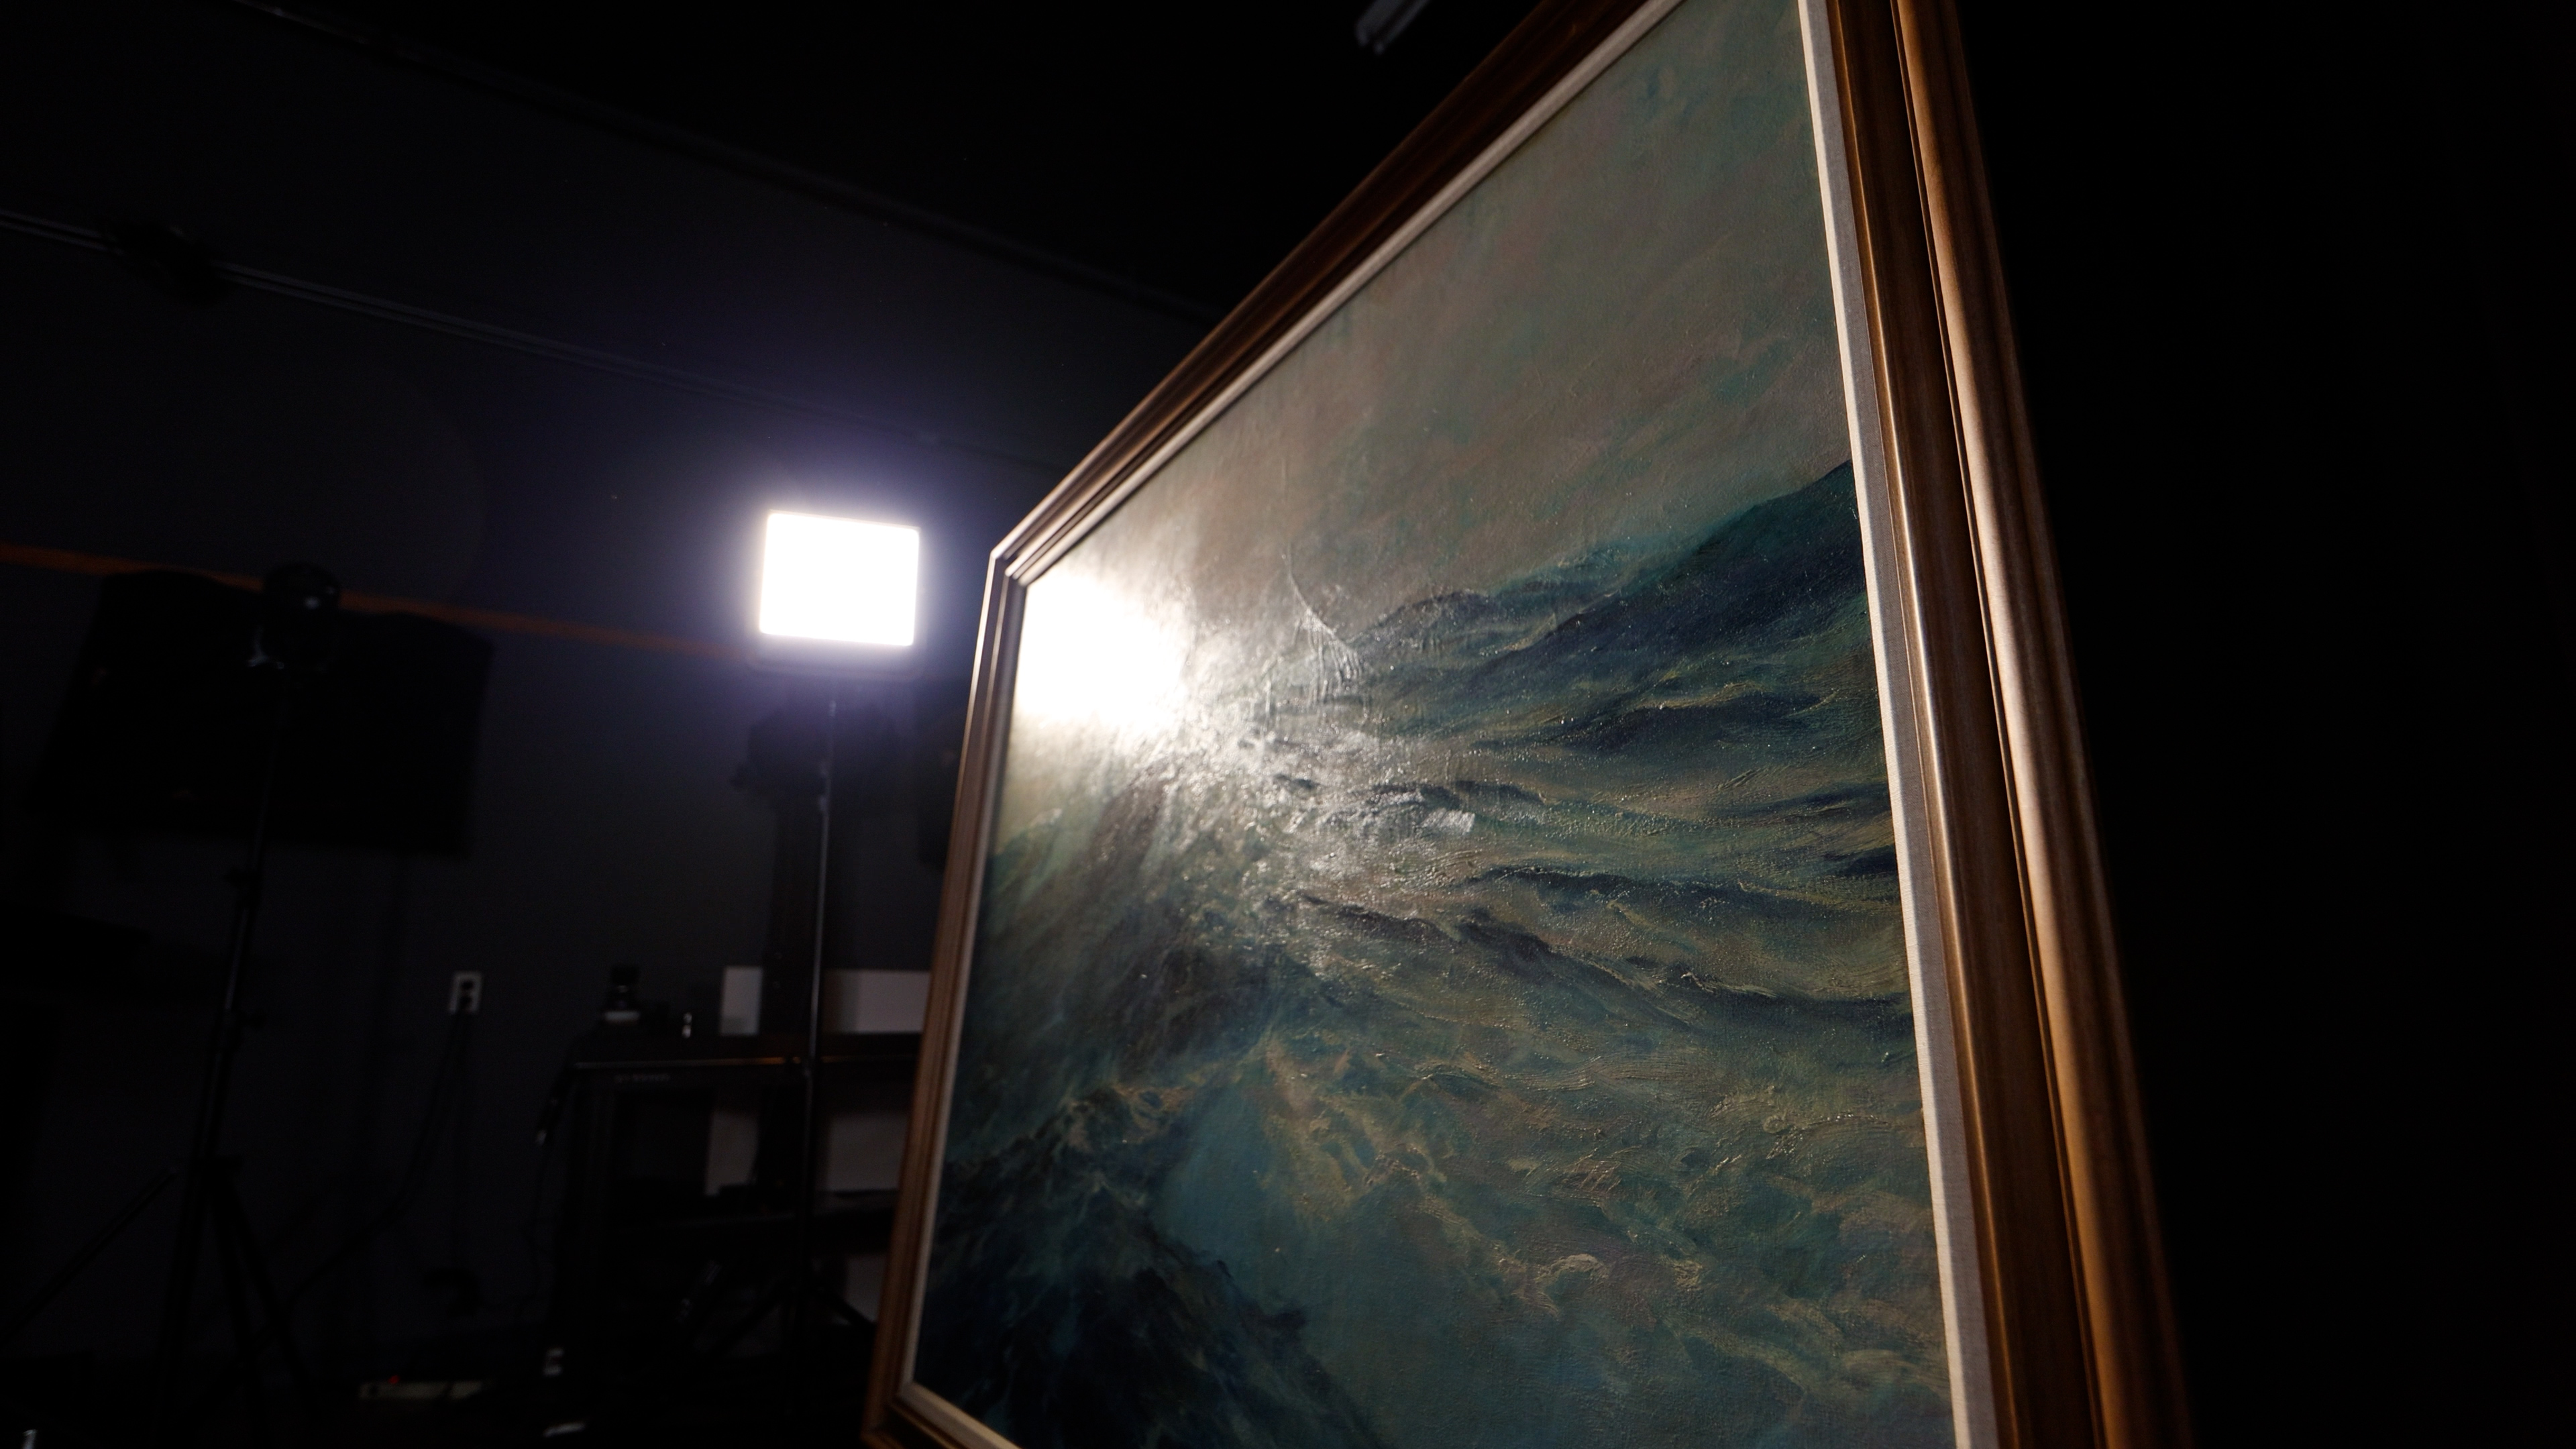 Studio shot of The Wild Gulf Stream by Frank Vining Smith